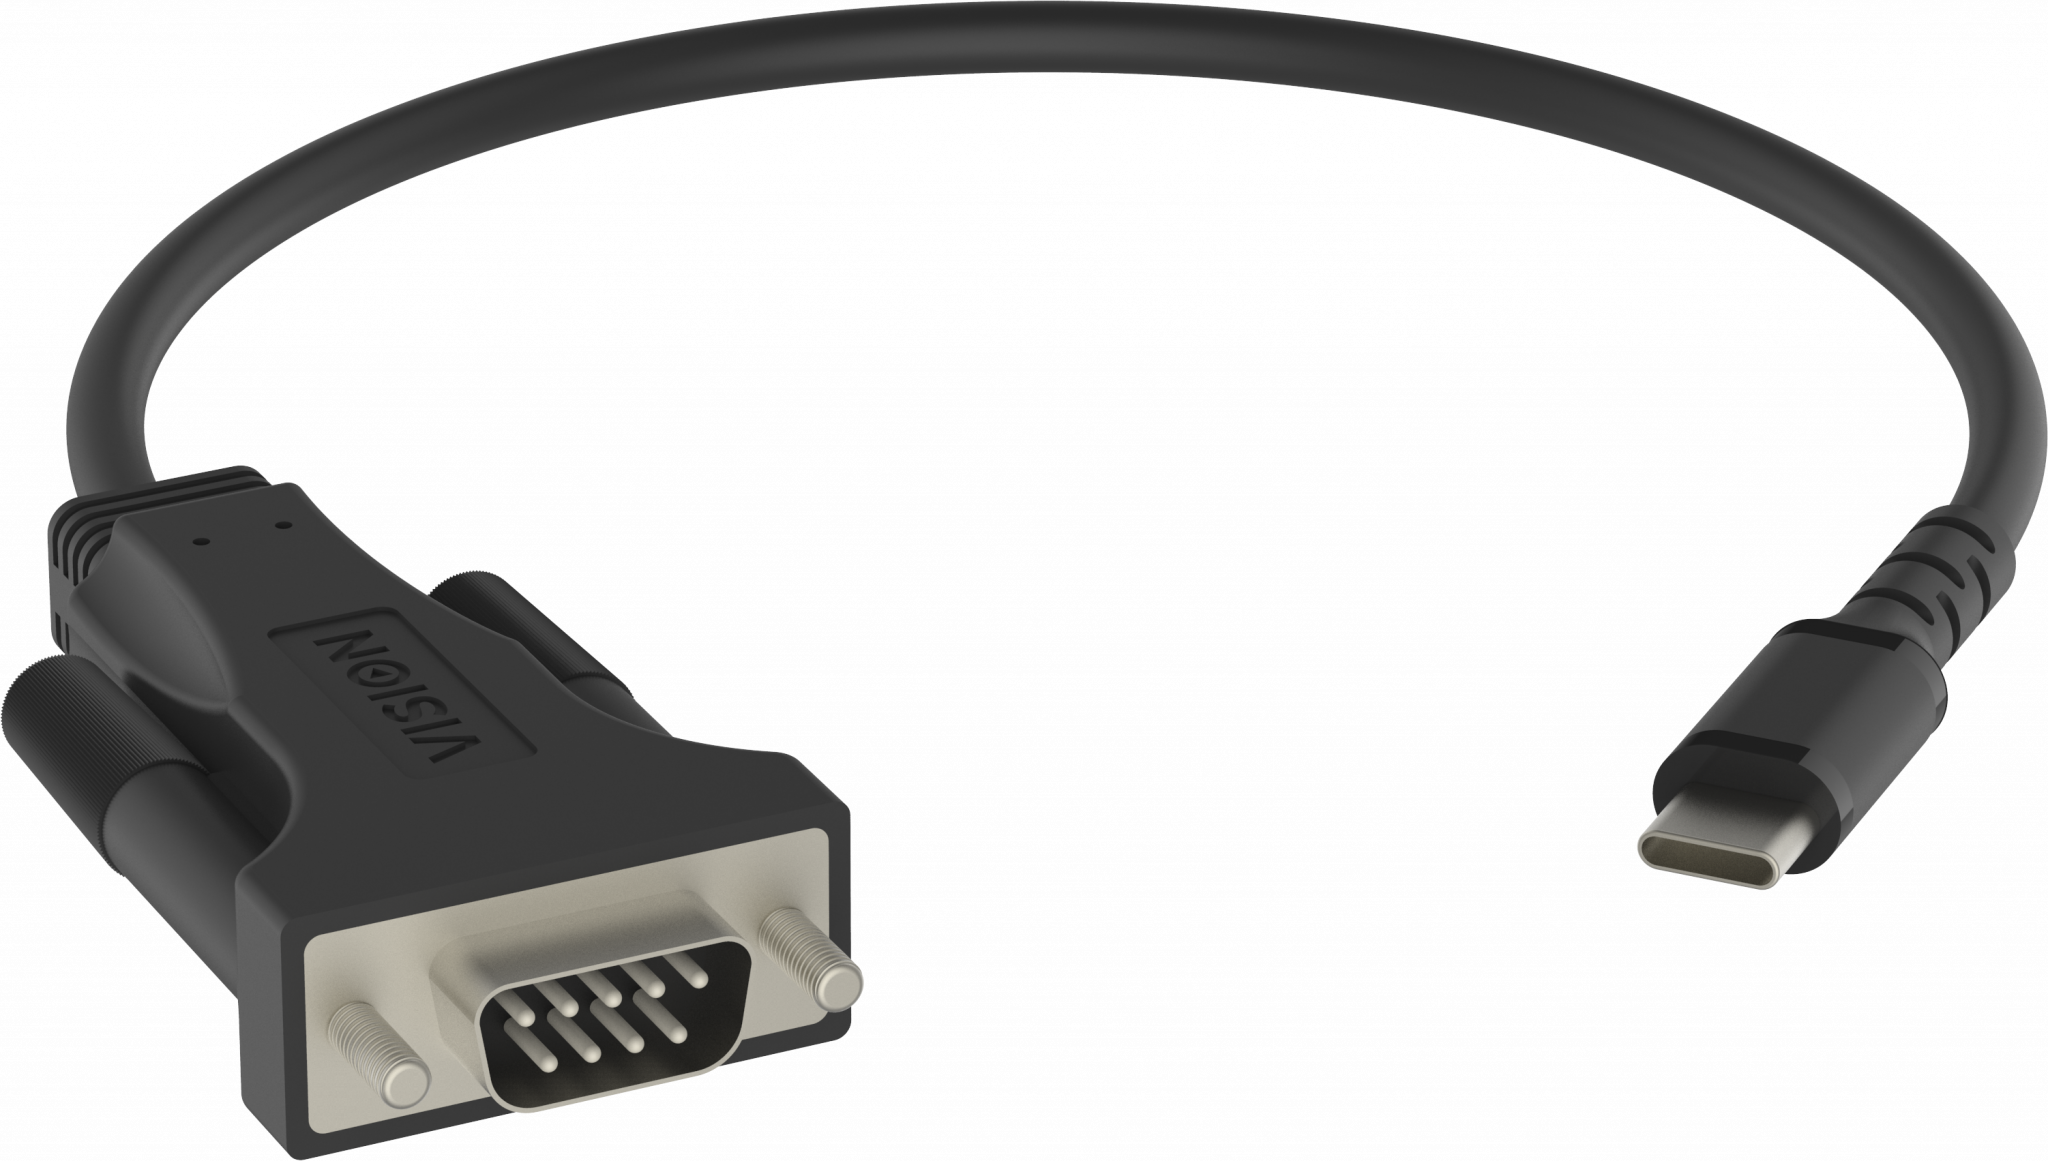 An image showing Adaptador USB-C 2.0 para série RS-232 de 9 pinos, de qualidade profissional, preto